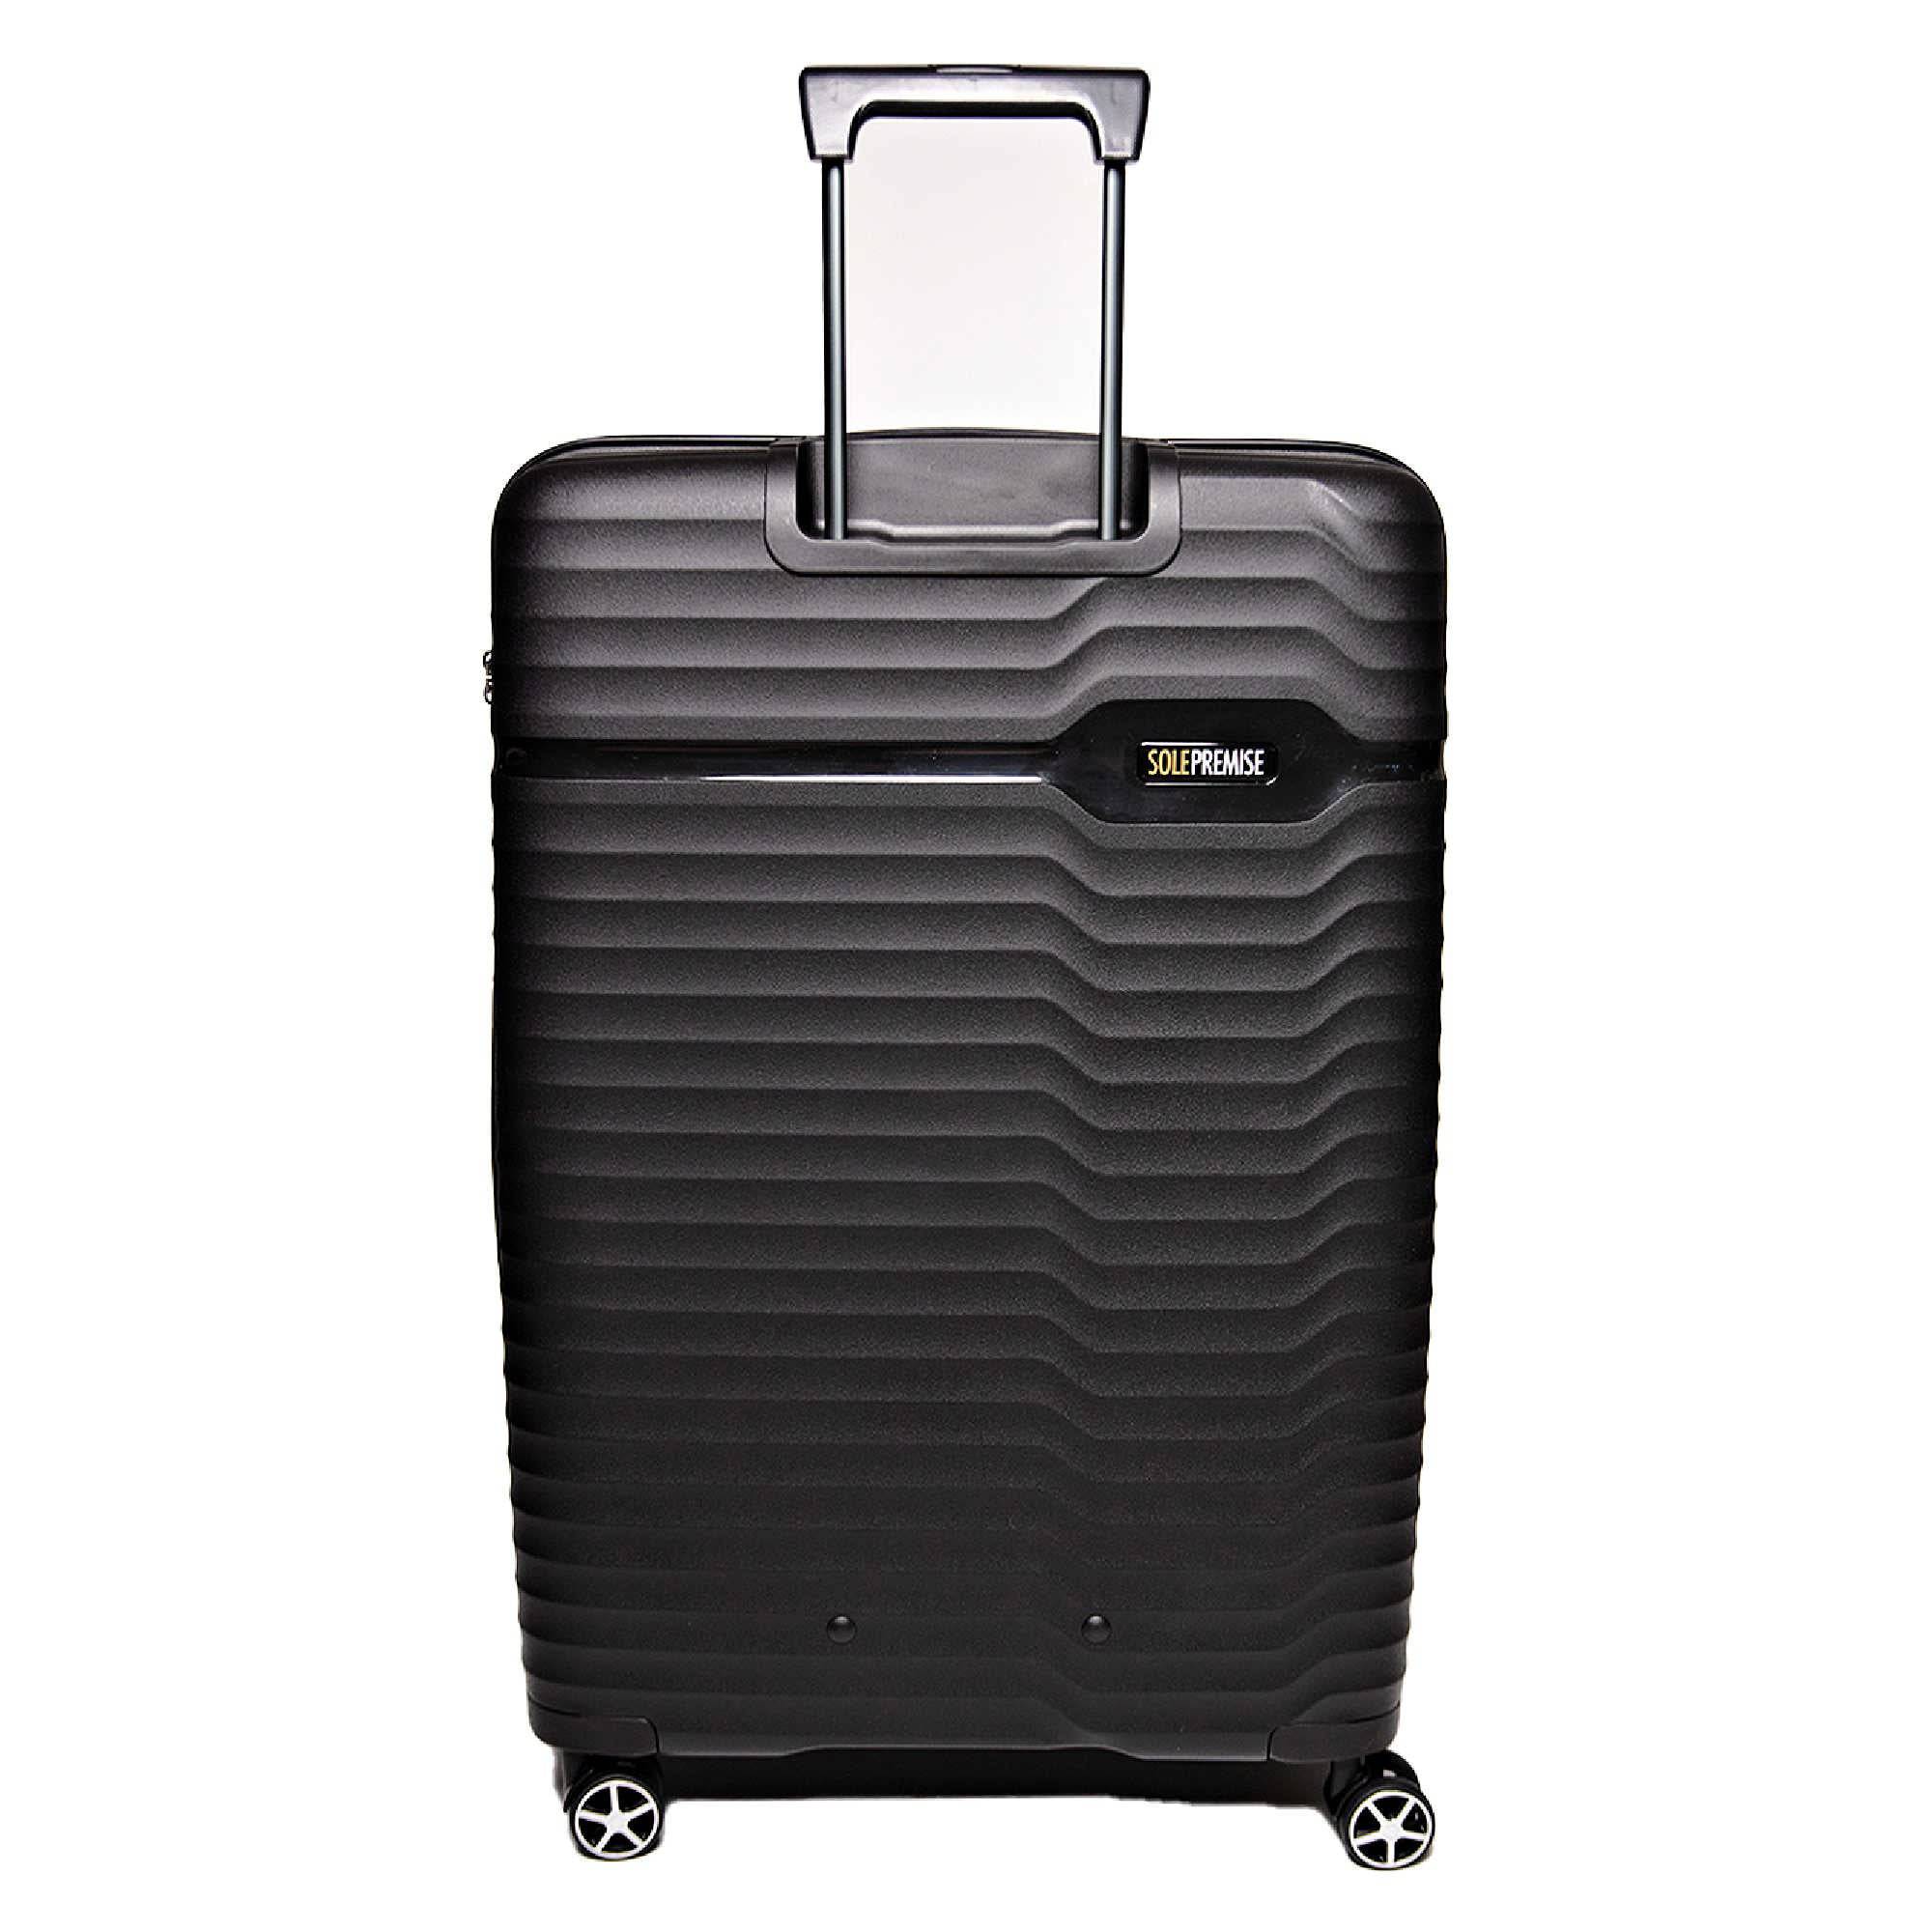 Hardcase Roller Luggage Set (28', 24' and 20') - Sole Premise